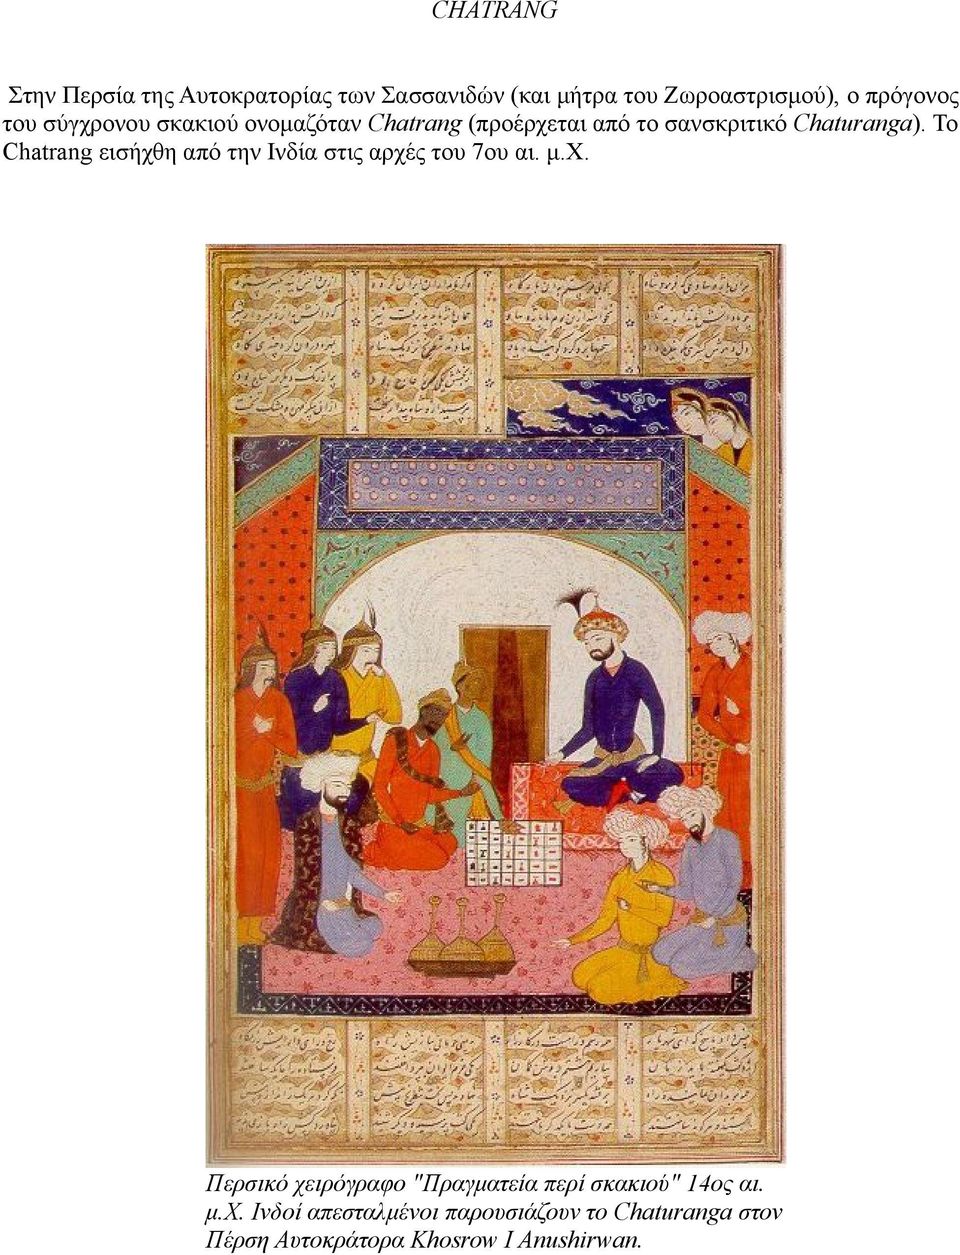 Το Chatrang εισήχθη από την Ινδία στις αρχές του 7ου αι. μ.χ. Περσικό χειρόγραφο "Πραγματεία περί σκακιού" 14ος αι.